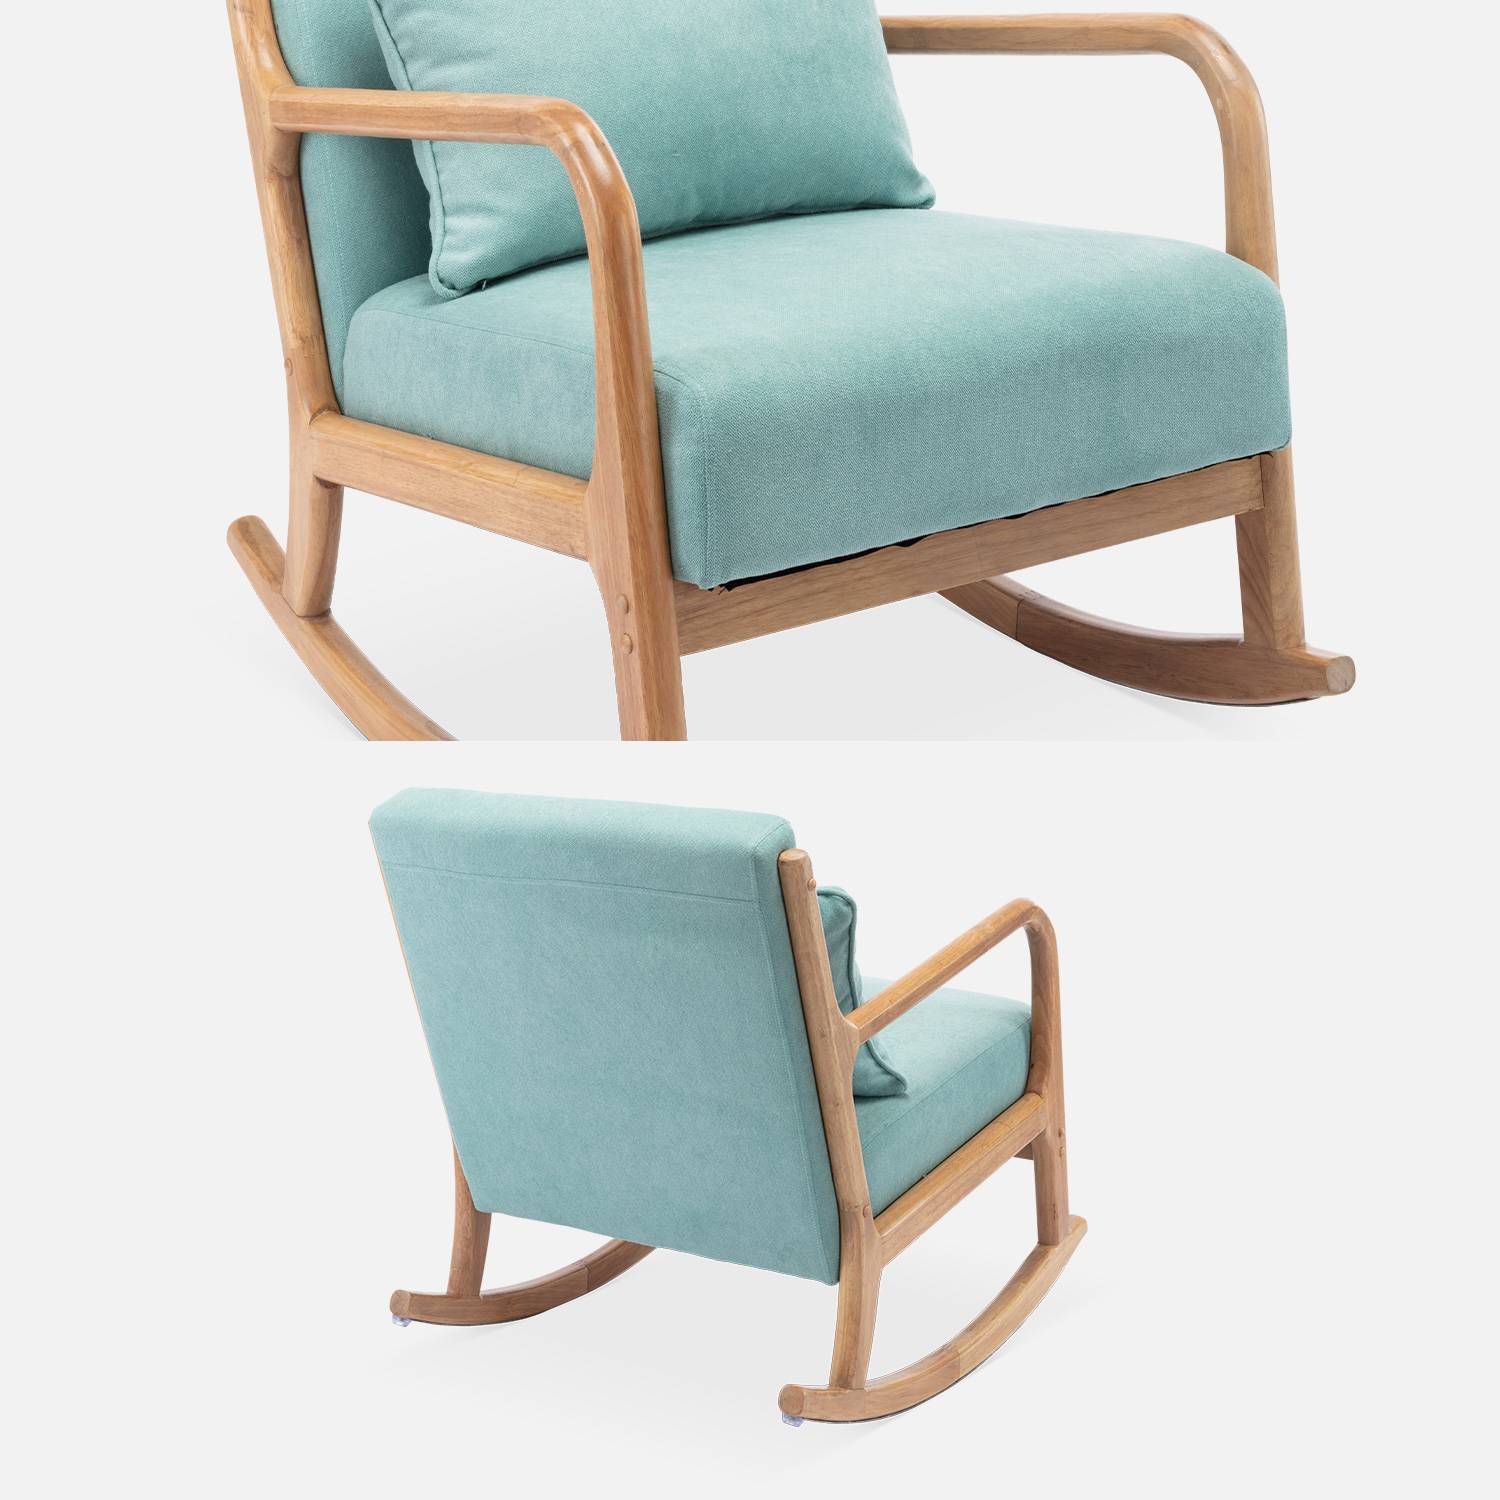 Fauteuil à bascule design en bois et tissu, 1 place, rocking chair scandinave, vert d'eau Photo7